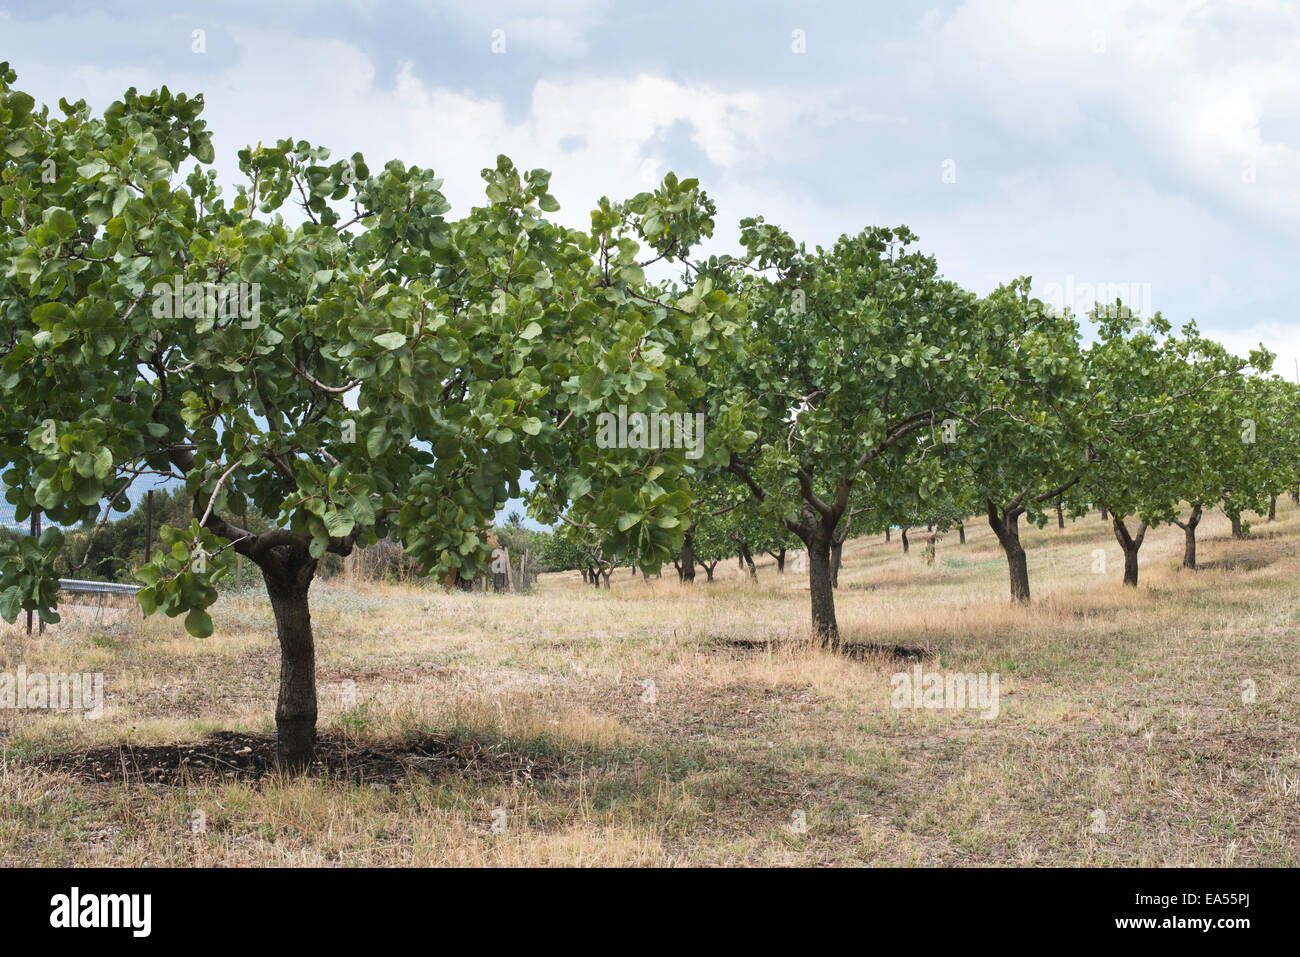 Les pistachiers en Grèce. Plantation de pistache Banque D'Images